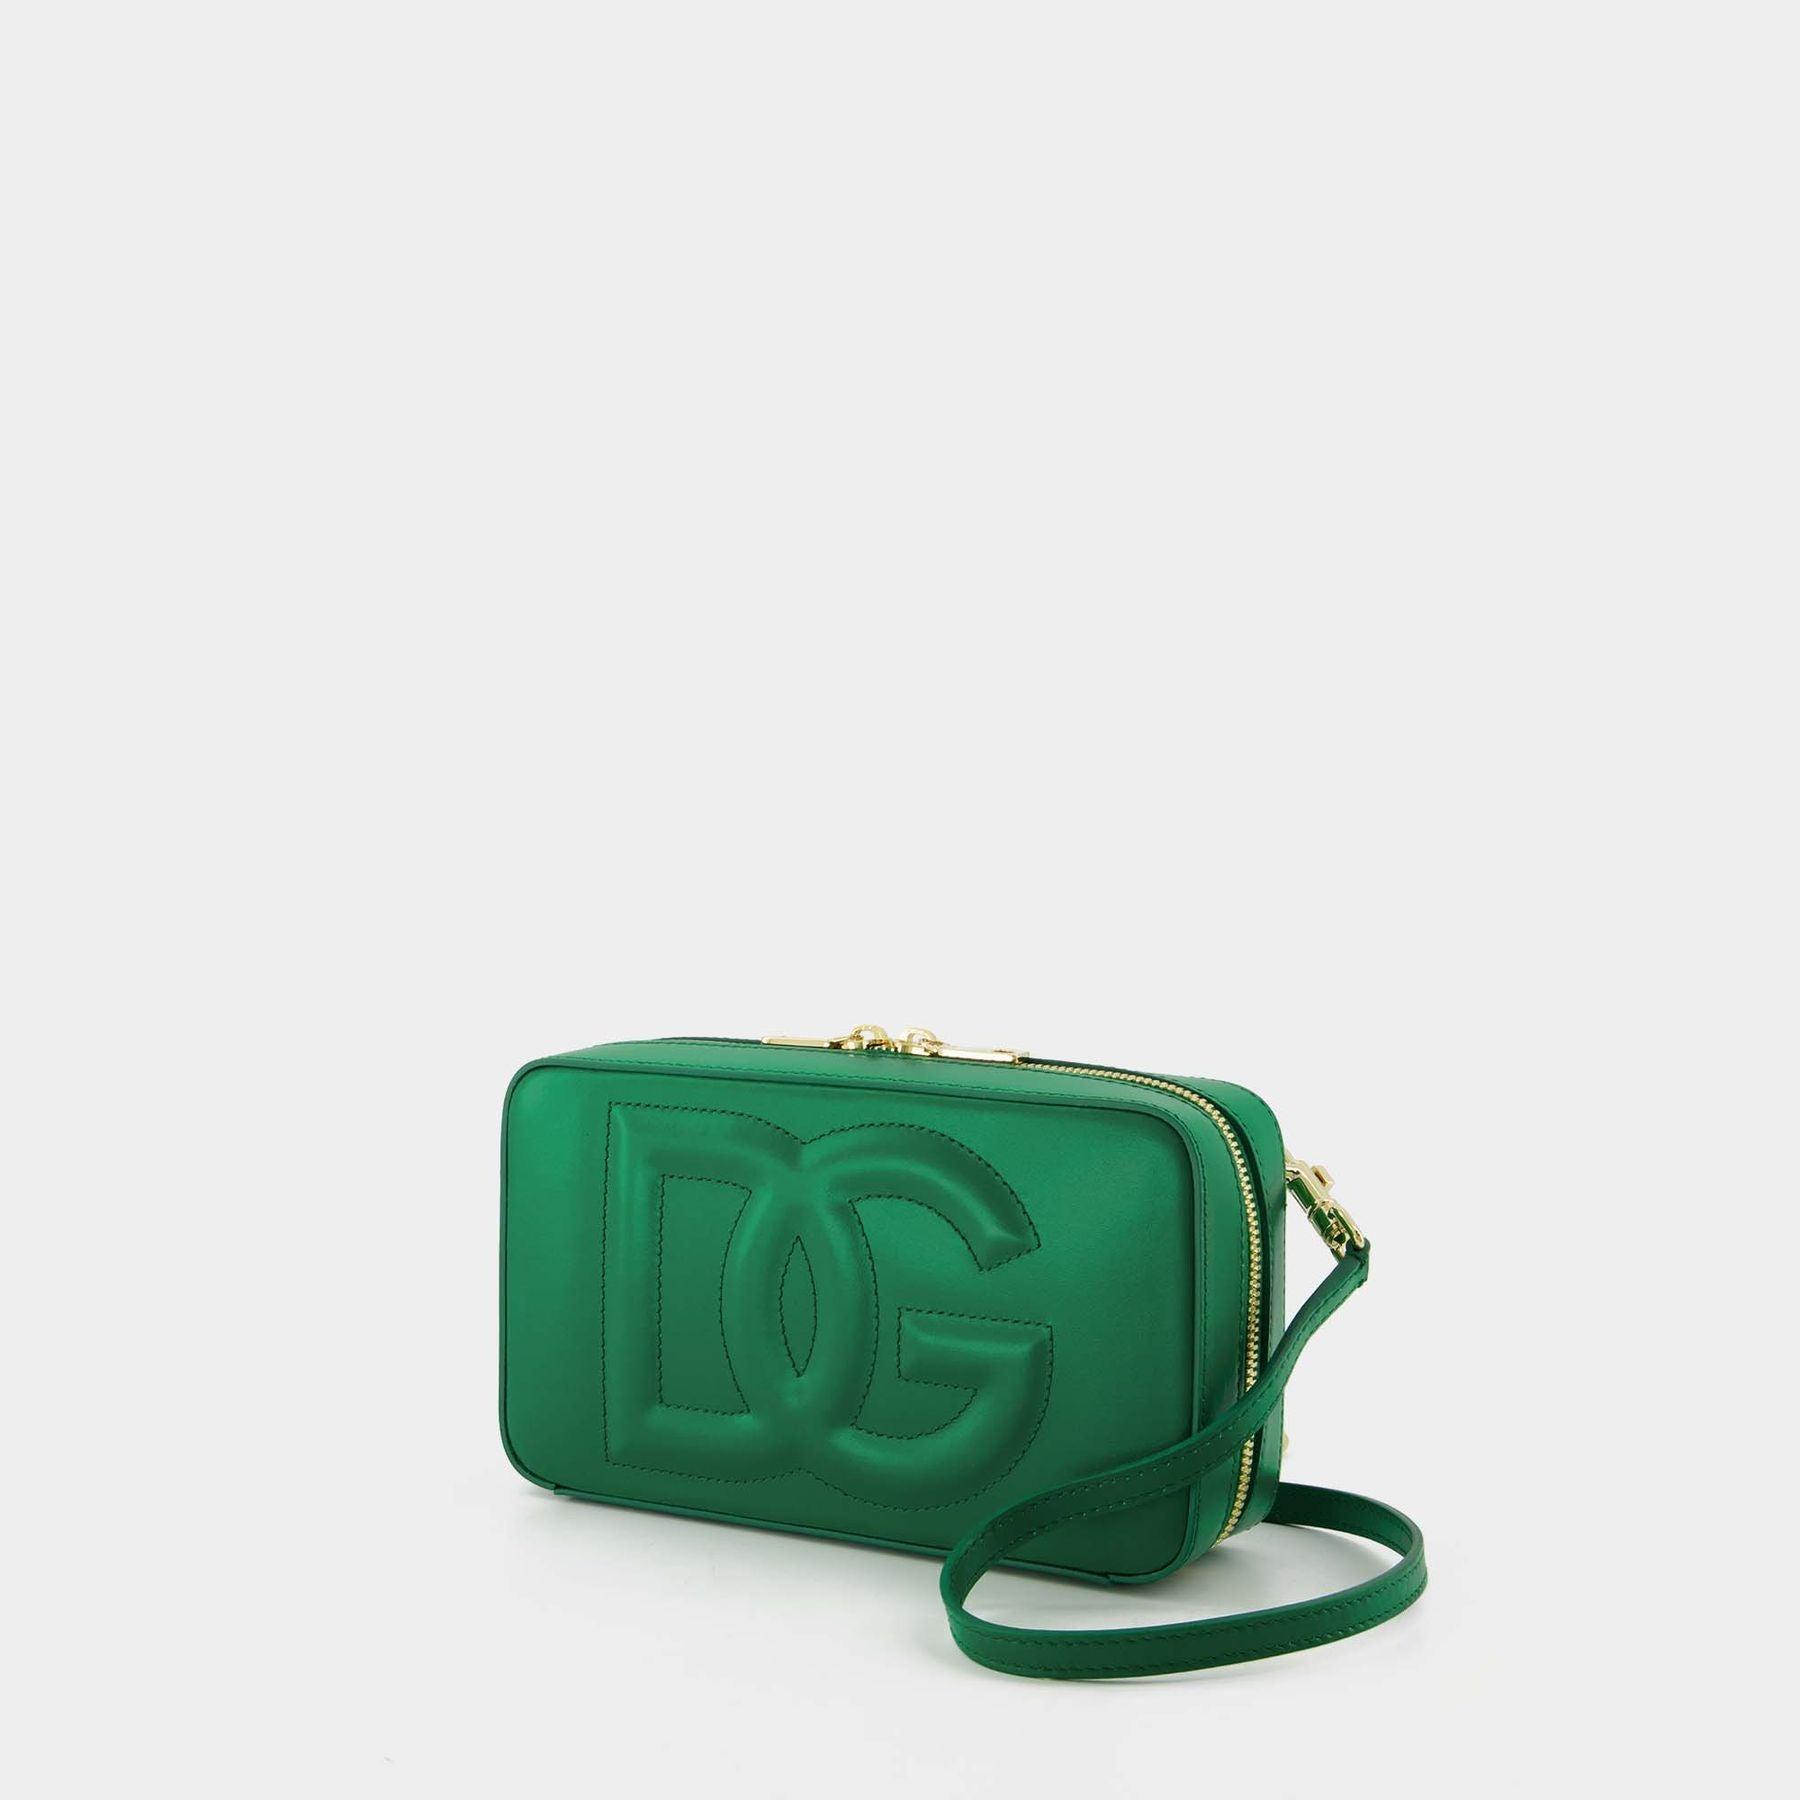 Dolce & Gabbana Dg Logo Camera Crossbody - Dolce & Gabbana - Green - Leather